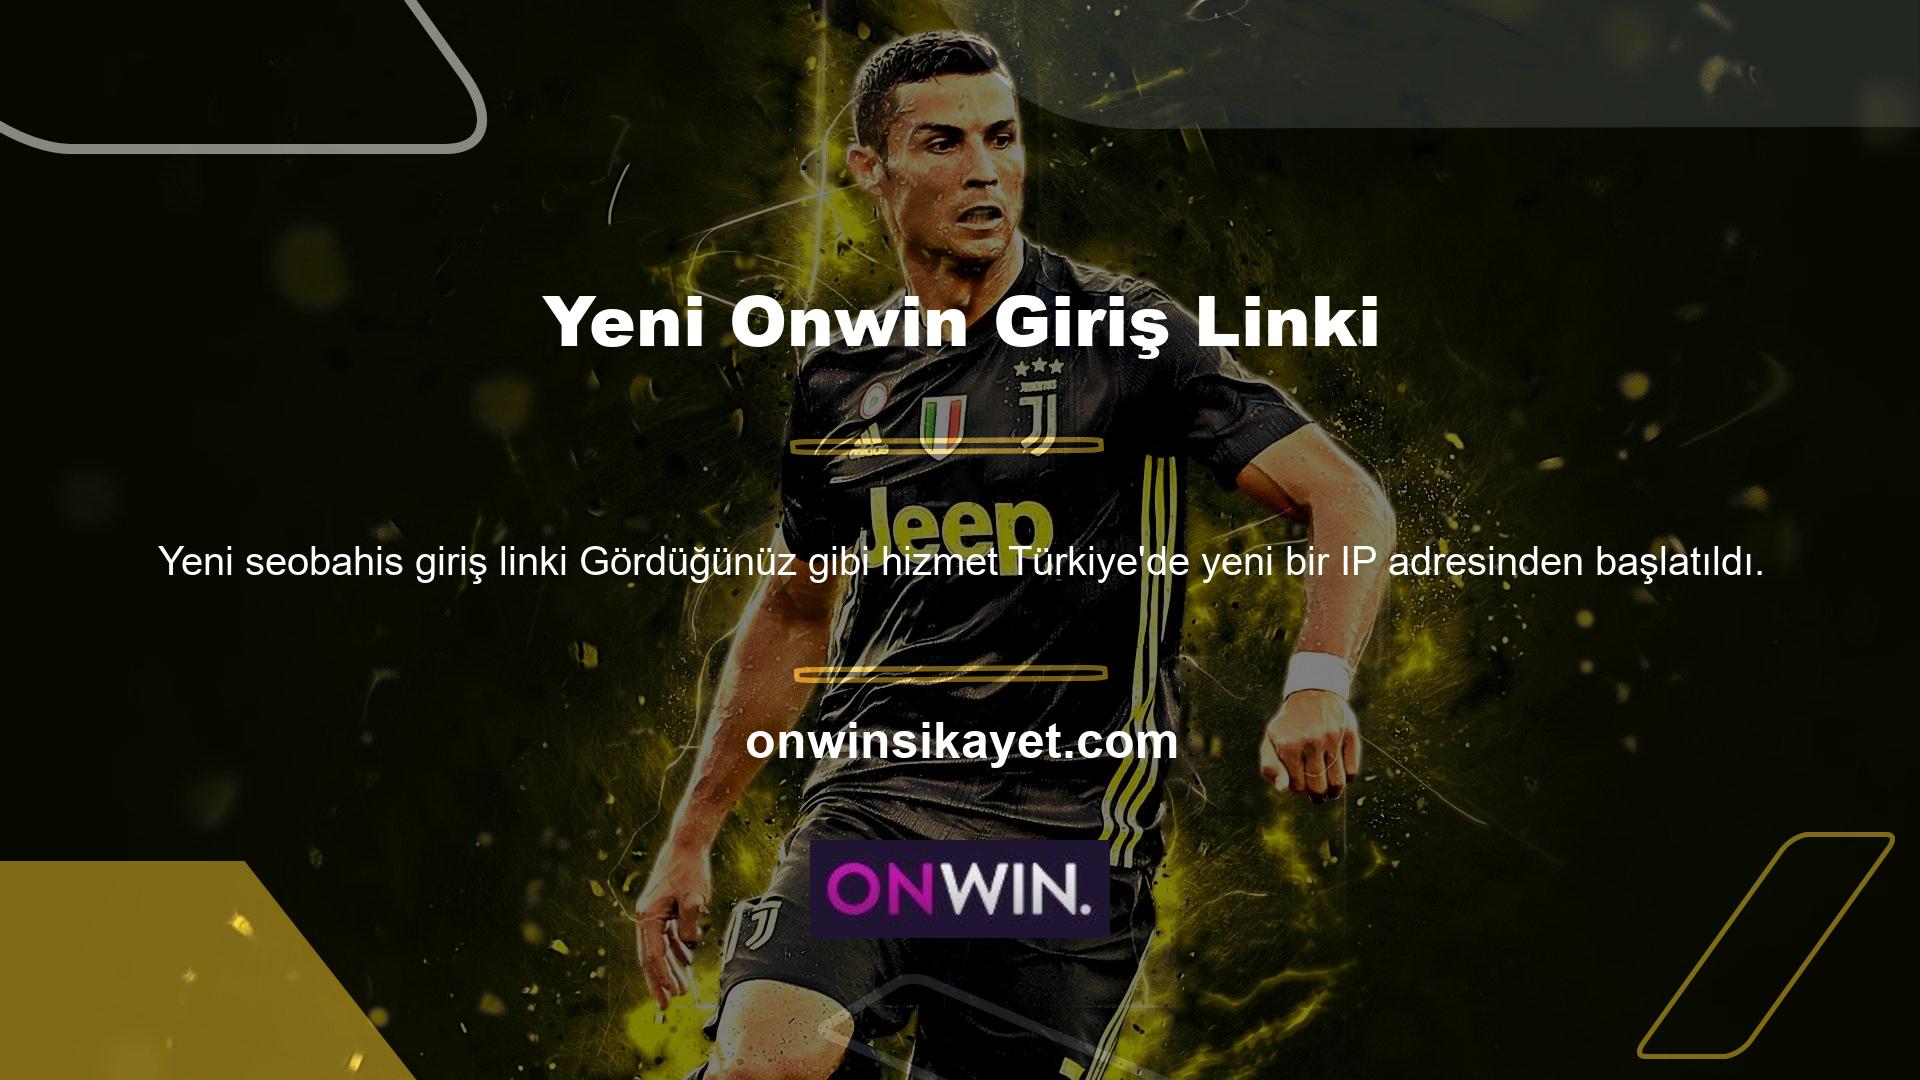 Bildiğiniz gibi profesyonellerden oluşan Onwin web sitesi Türkiye pazarında hizmetlerine başlamıştır